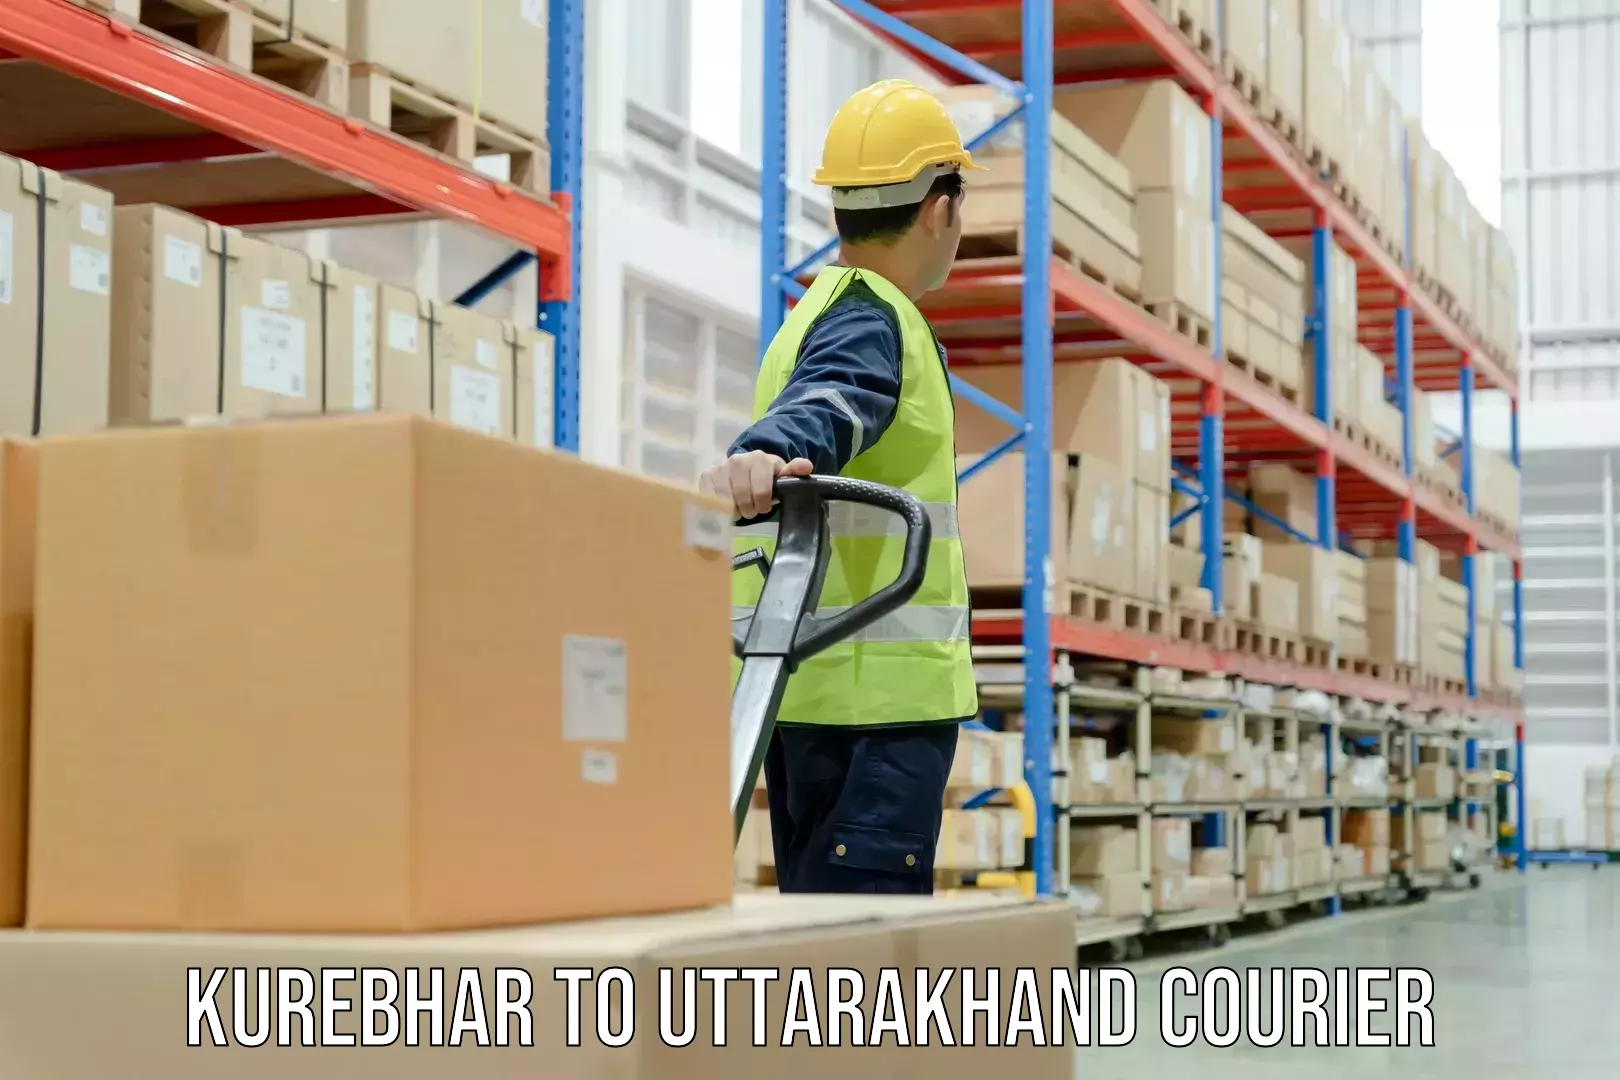 Efficient package consolidation Kurebhar to Uttarakhand